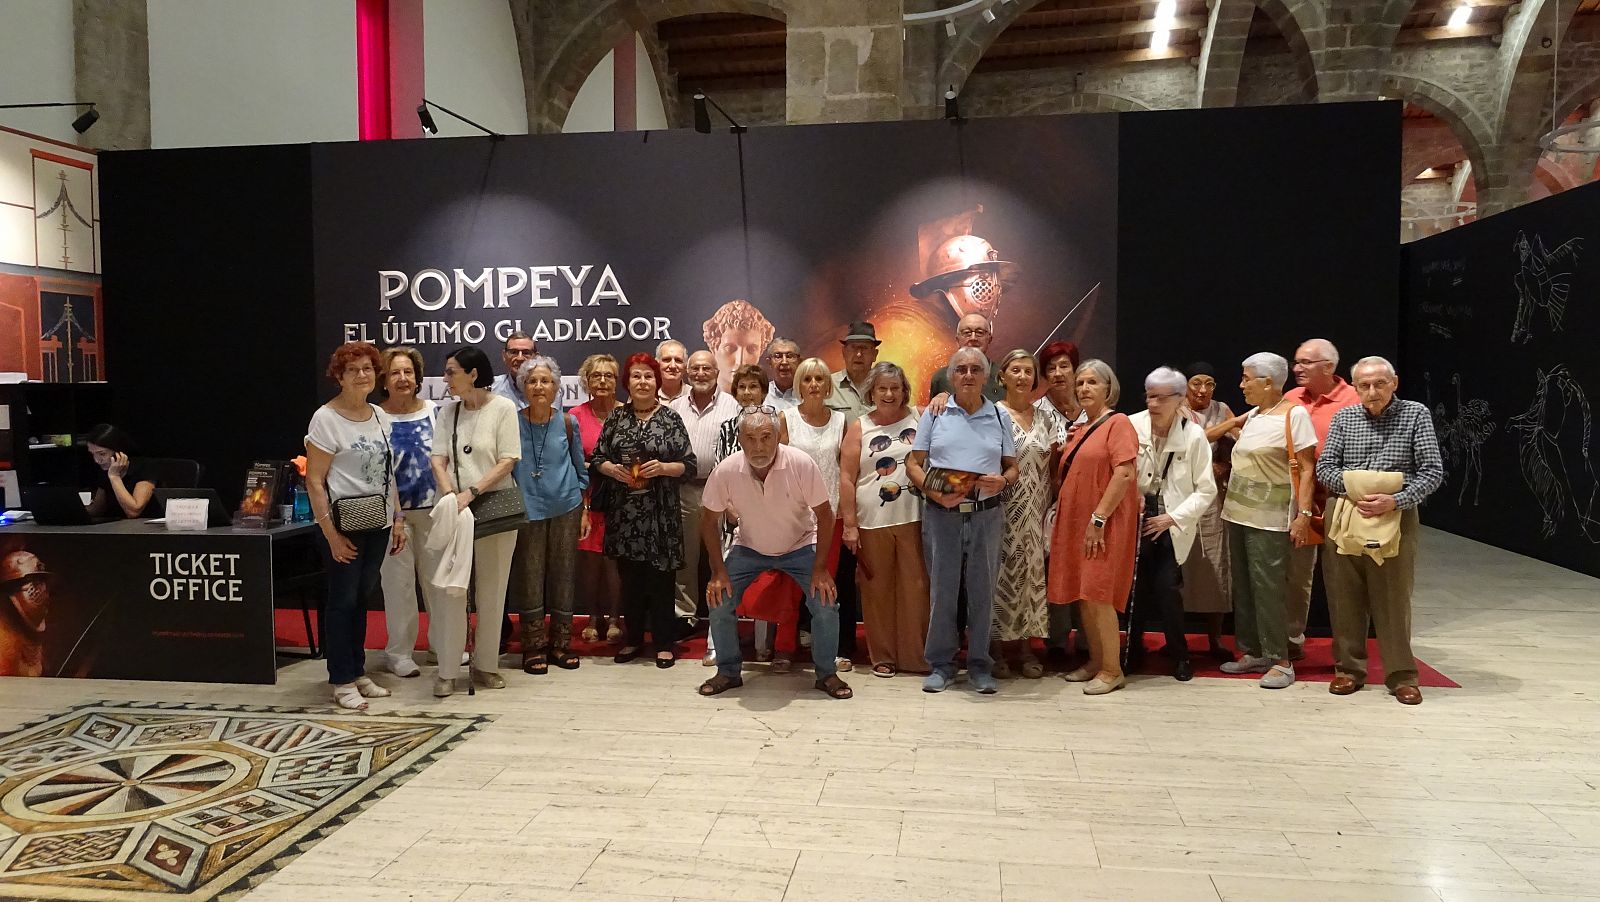 Pompeya, el último gladiador